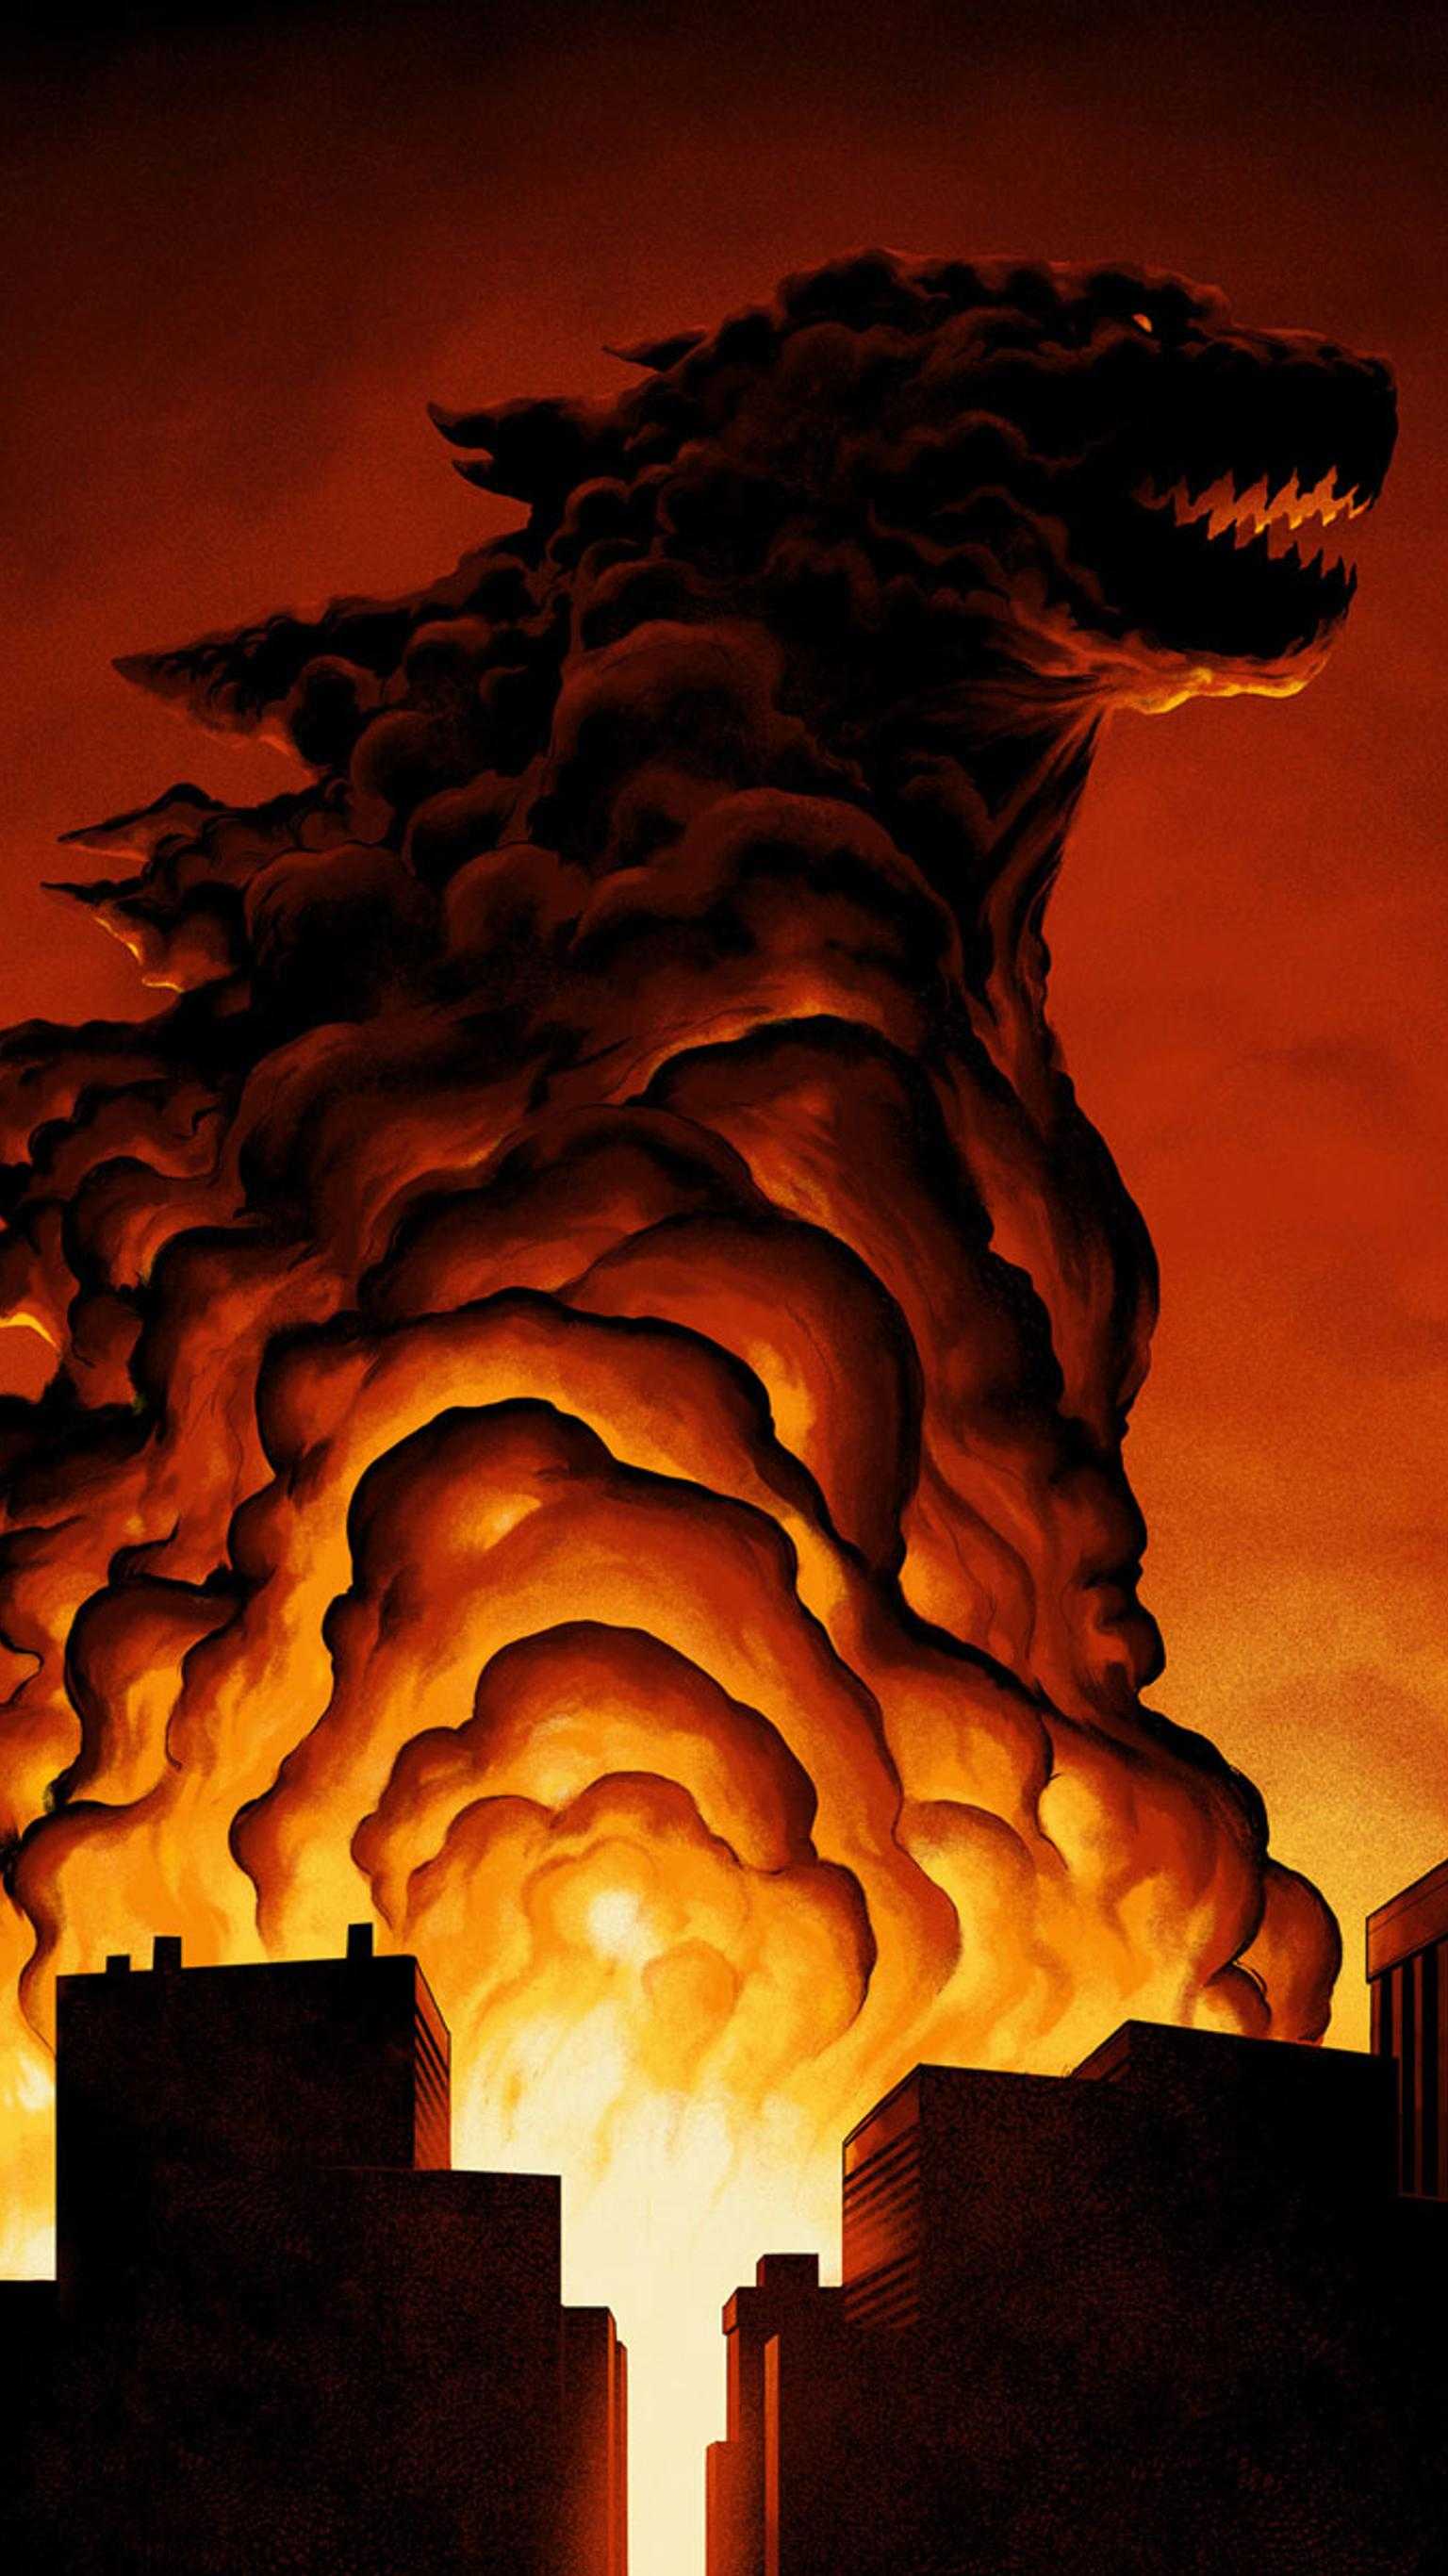 HD Godzilla Wallpaper - iXpap